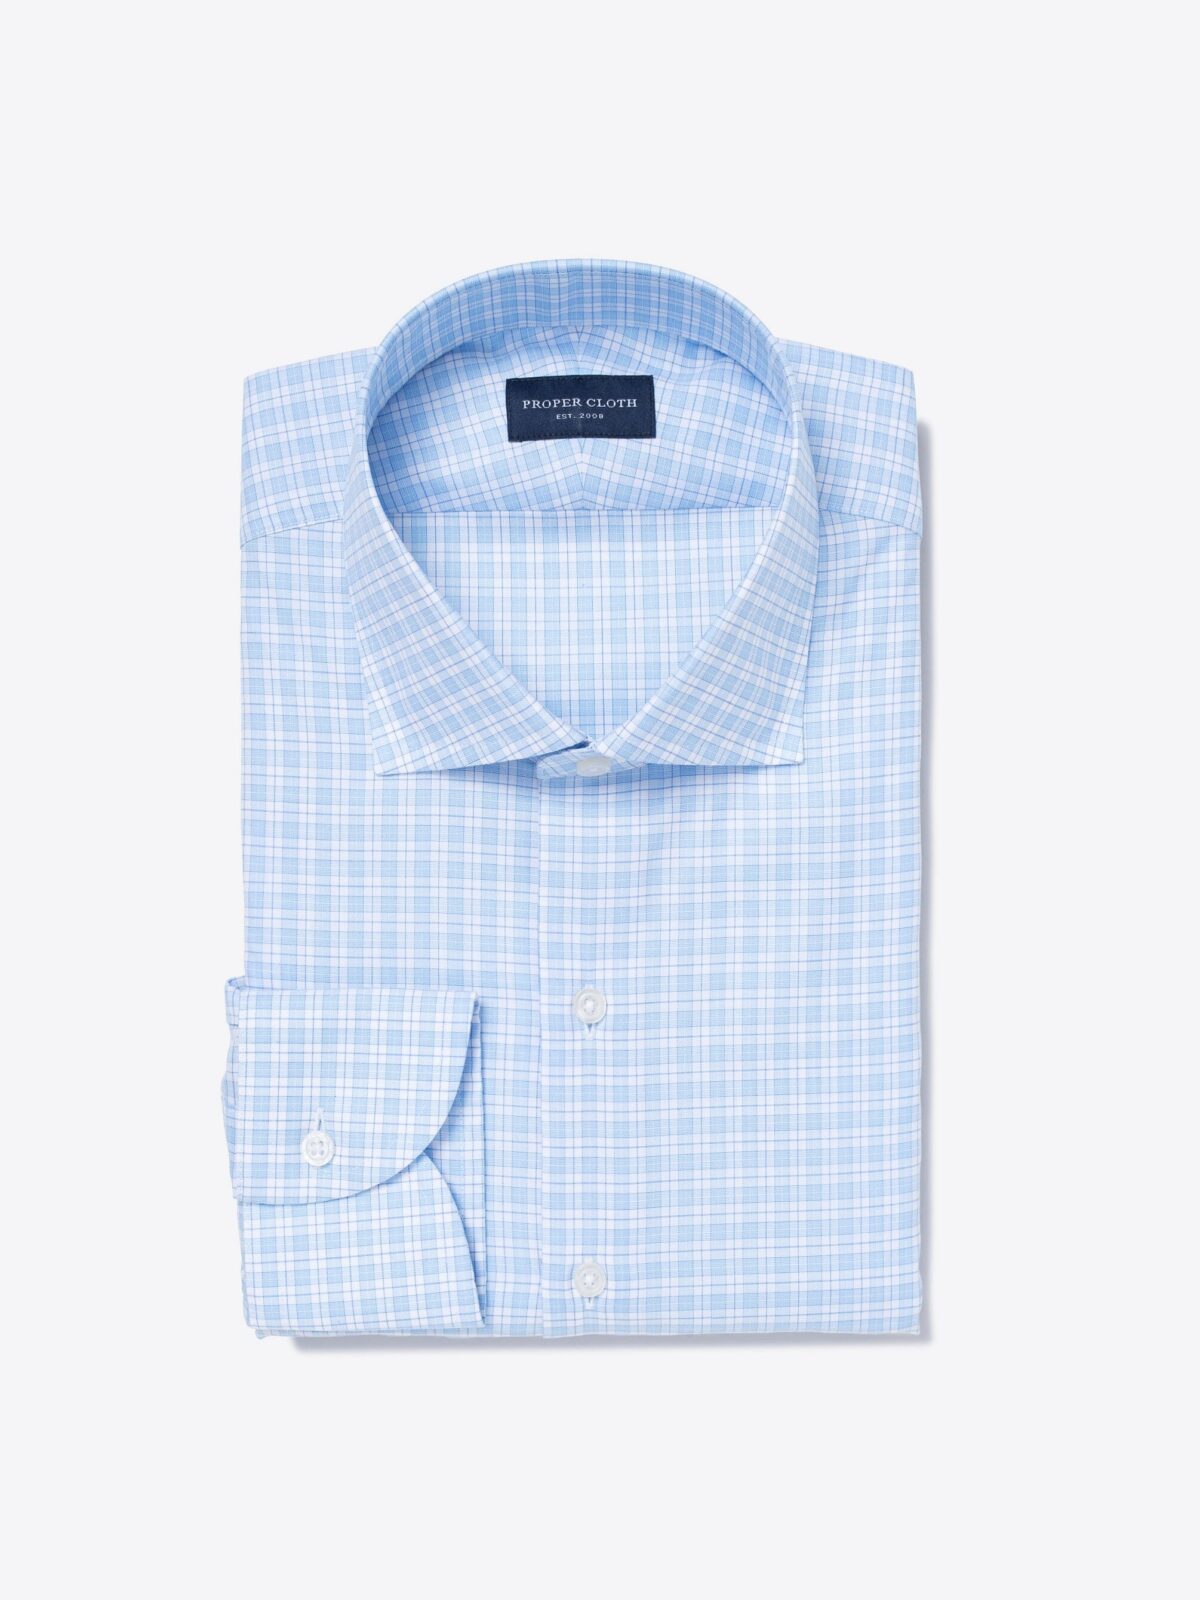 Carmine 120s Sky Blue Small Check Men's Dress Shirt Shirt by Proper Cloth